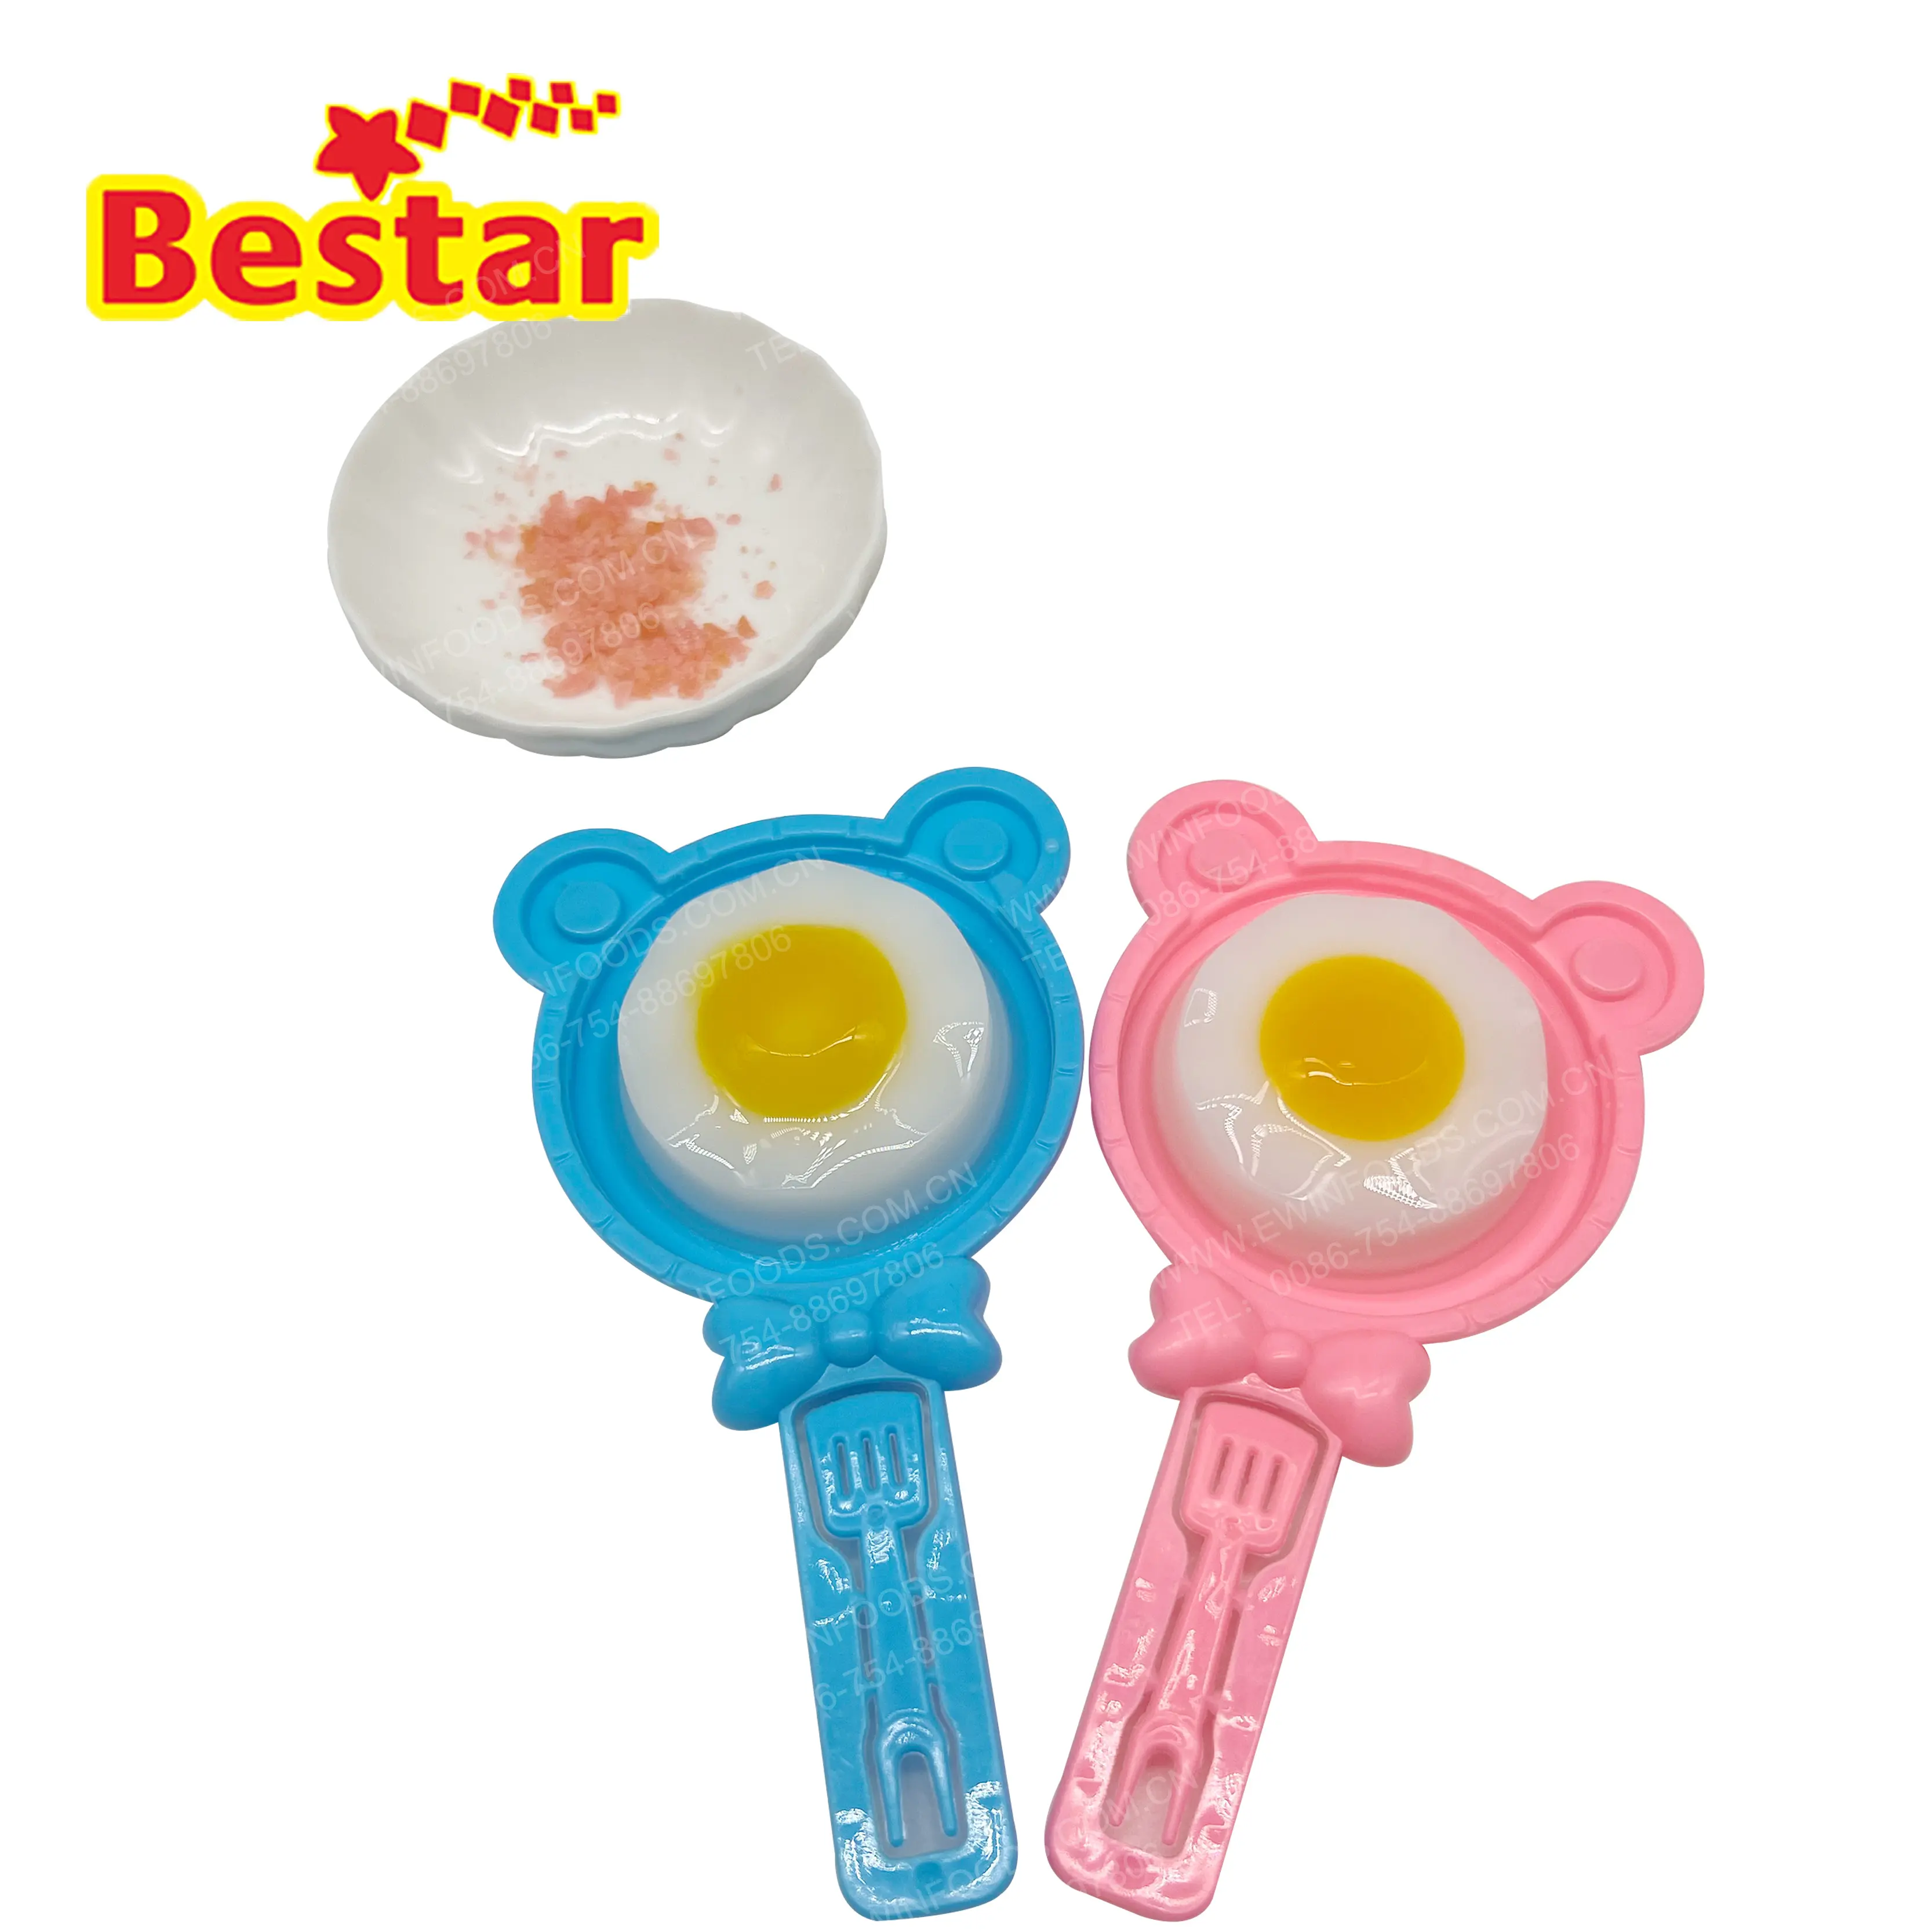 البيض حلوى لينة الجملة مضحك الدب شكل البيض غائر هلام المطبخ ألعاب حلوى للأطفال مخصص تصميم و شعار الحلوى المورد